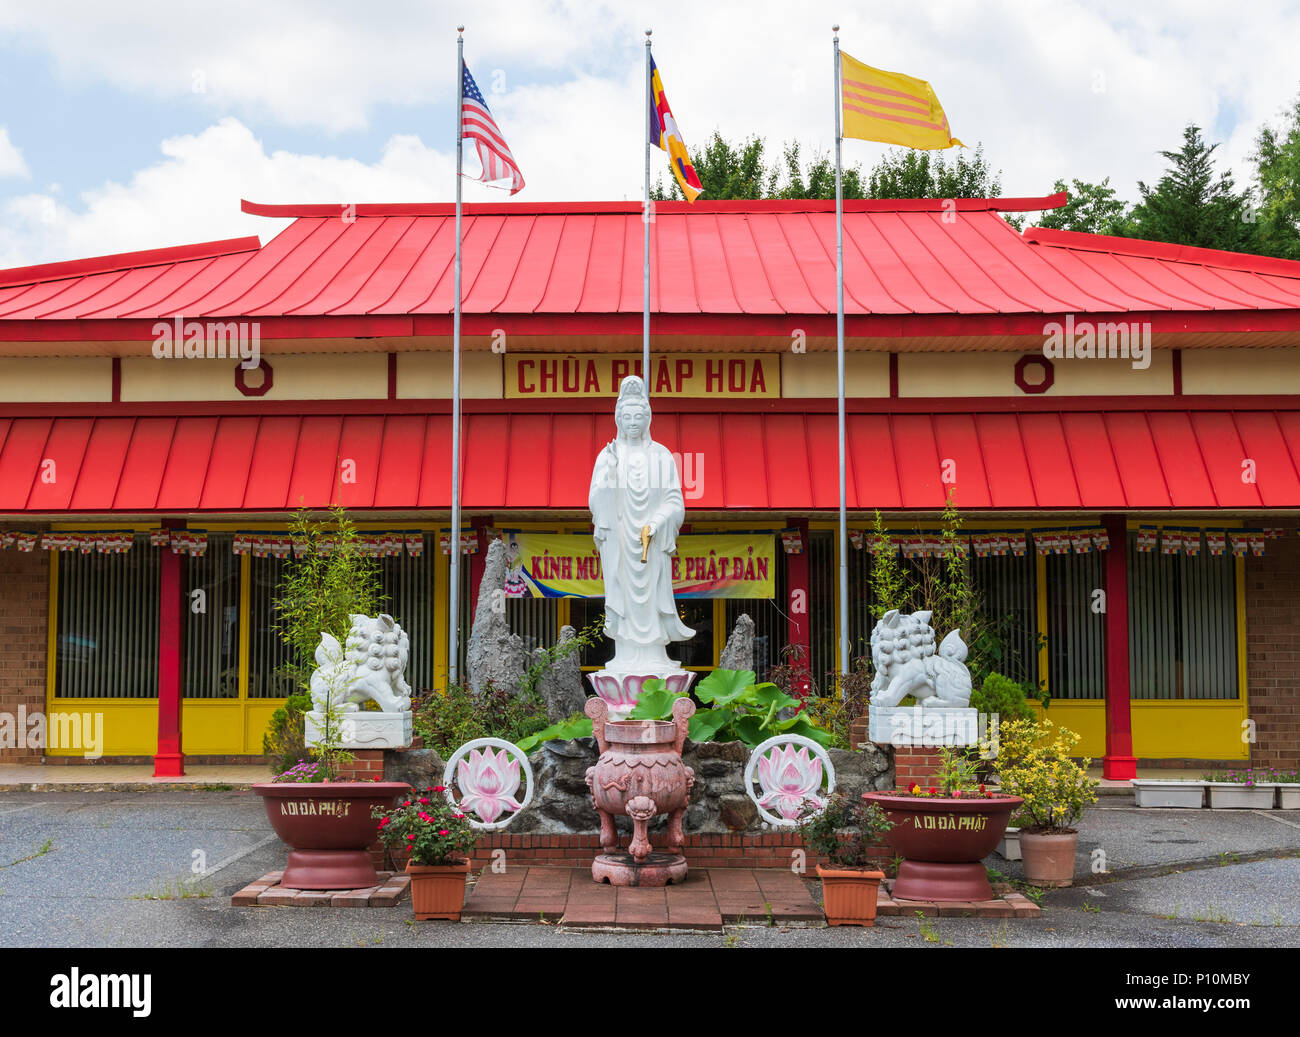 HICKORY, NC, Stati Uniti d'America-31 18 maggio: un vietnamita tempio buddista, chua phap hoa, situato nella piccola città del sud di Hickory. Foto Stock